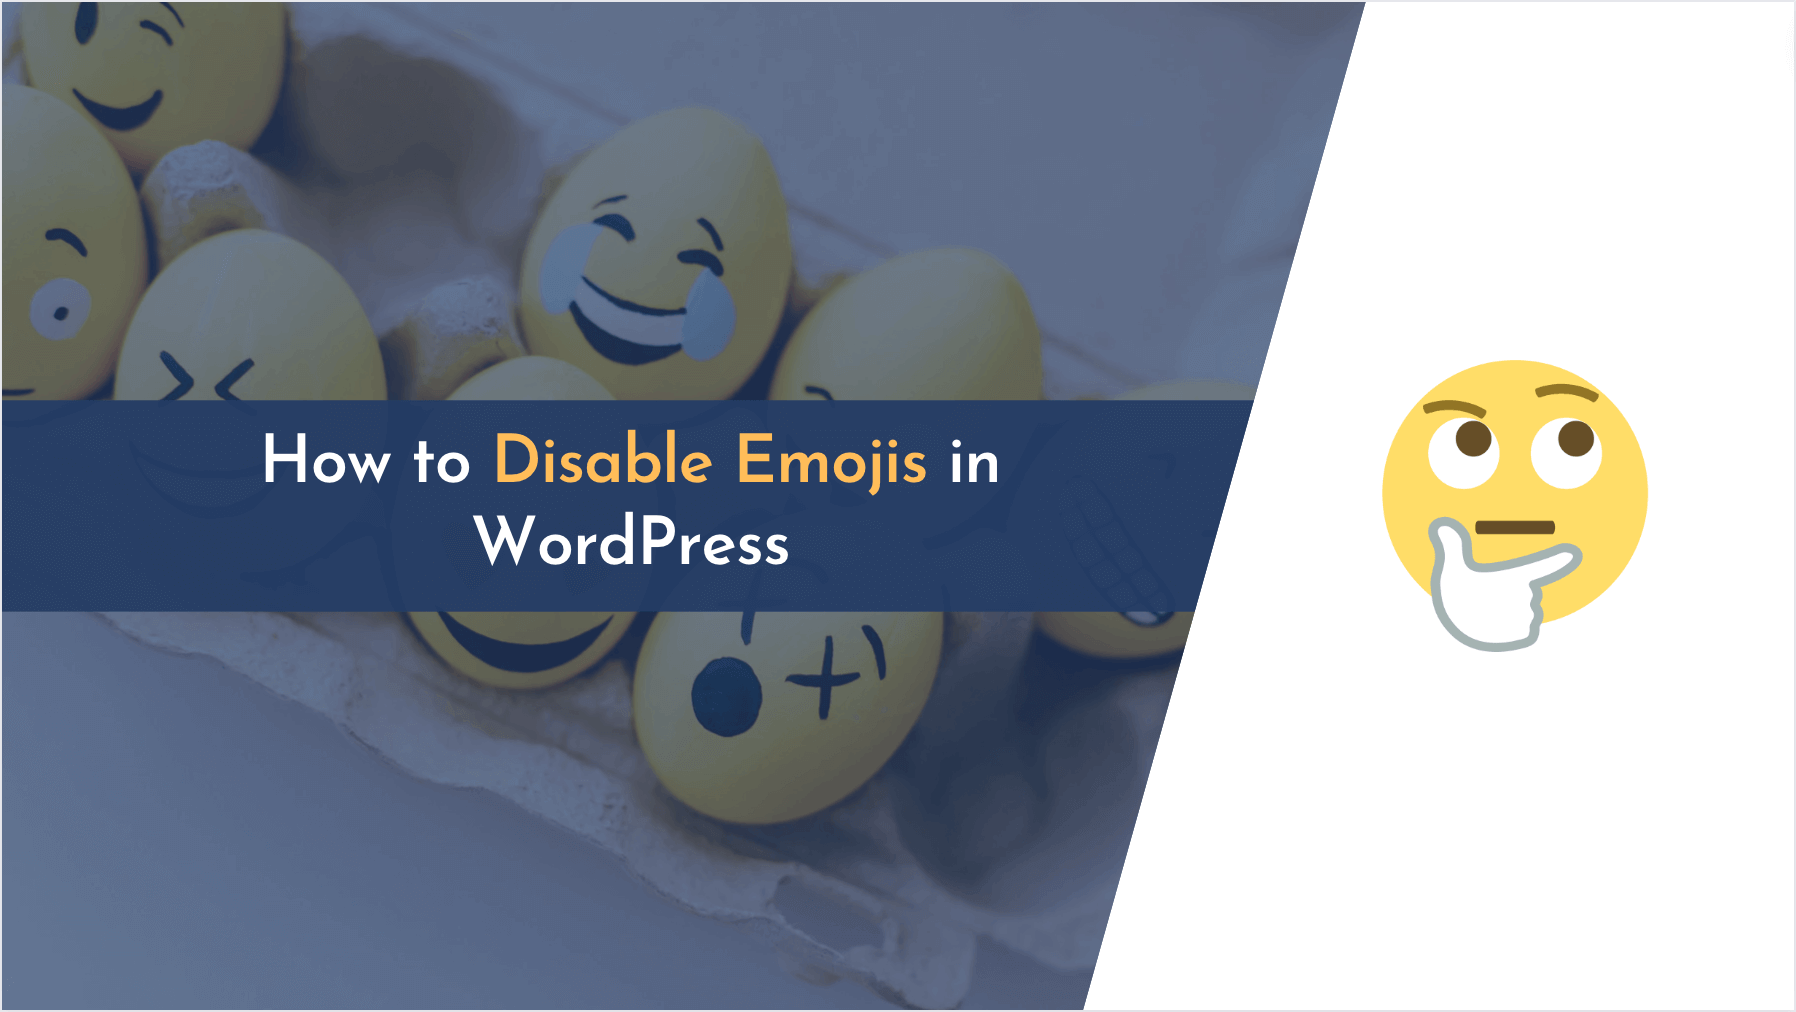 disable emoji file in wordpress, disable emojis, disable emojis wordpress, wordpress disable emojis